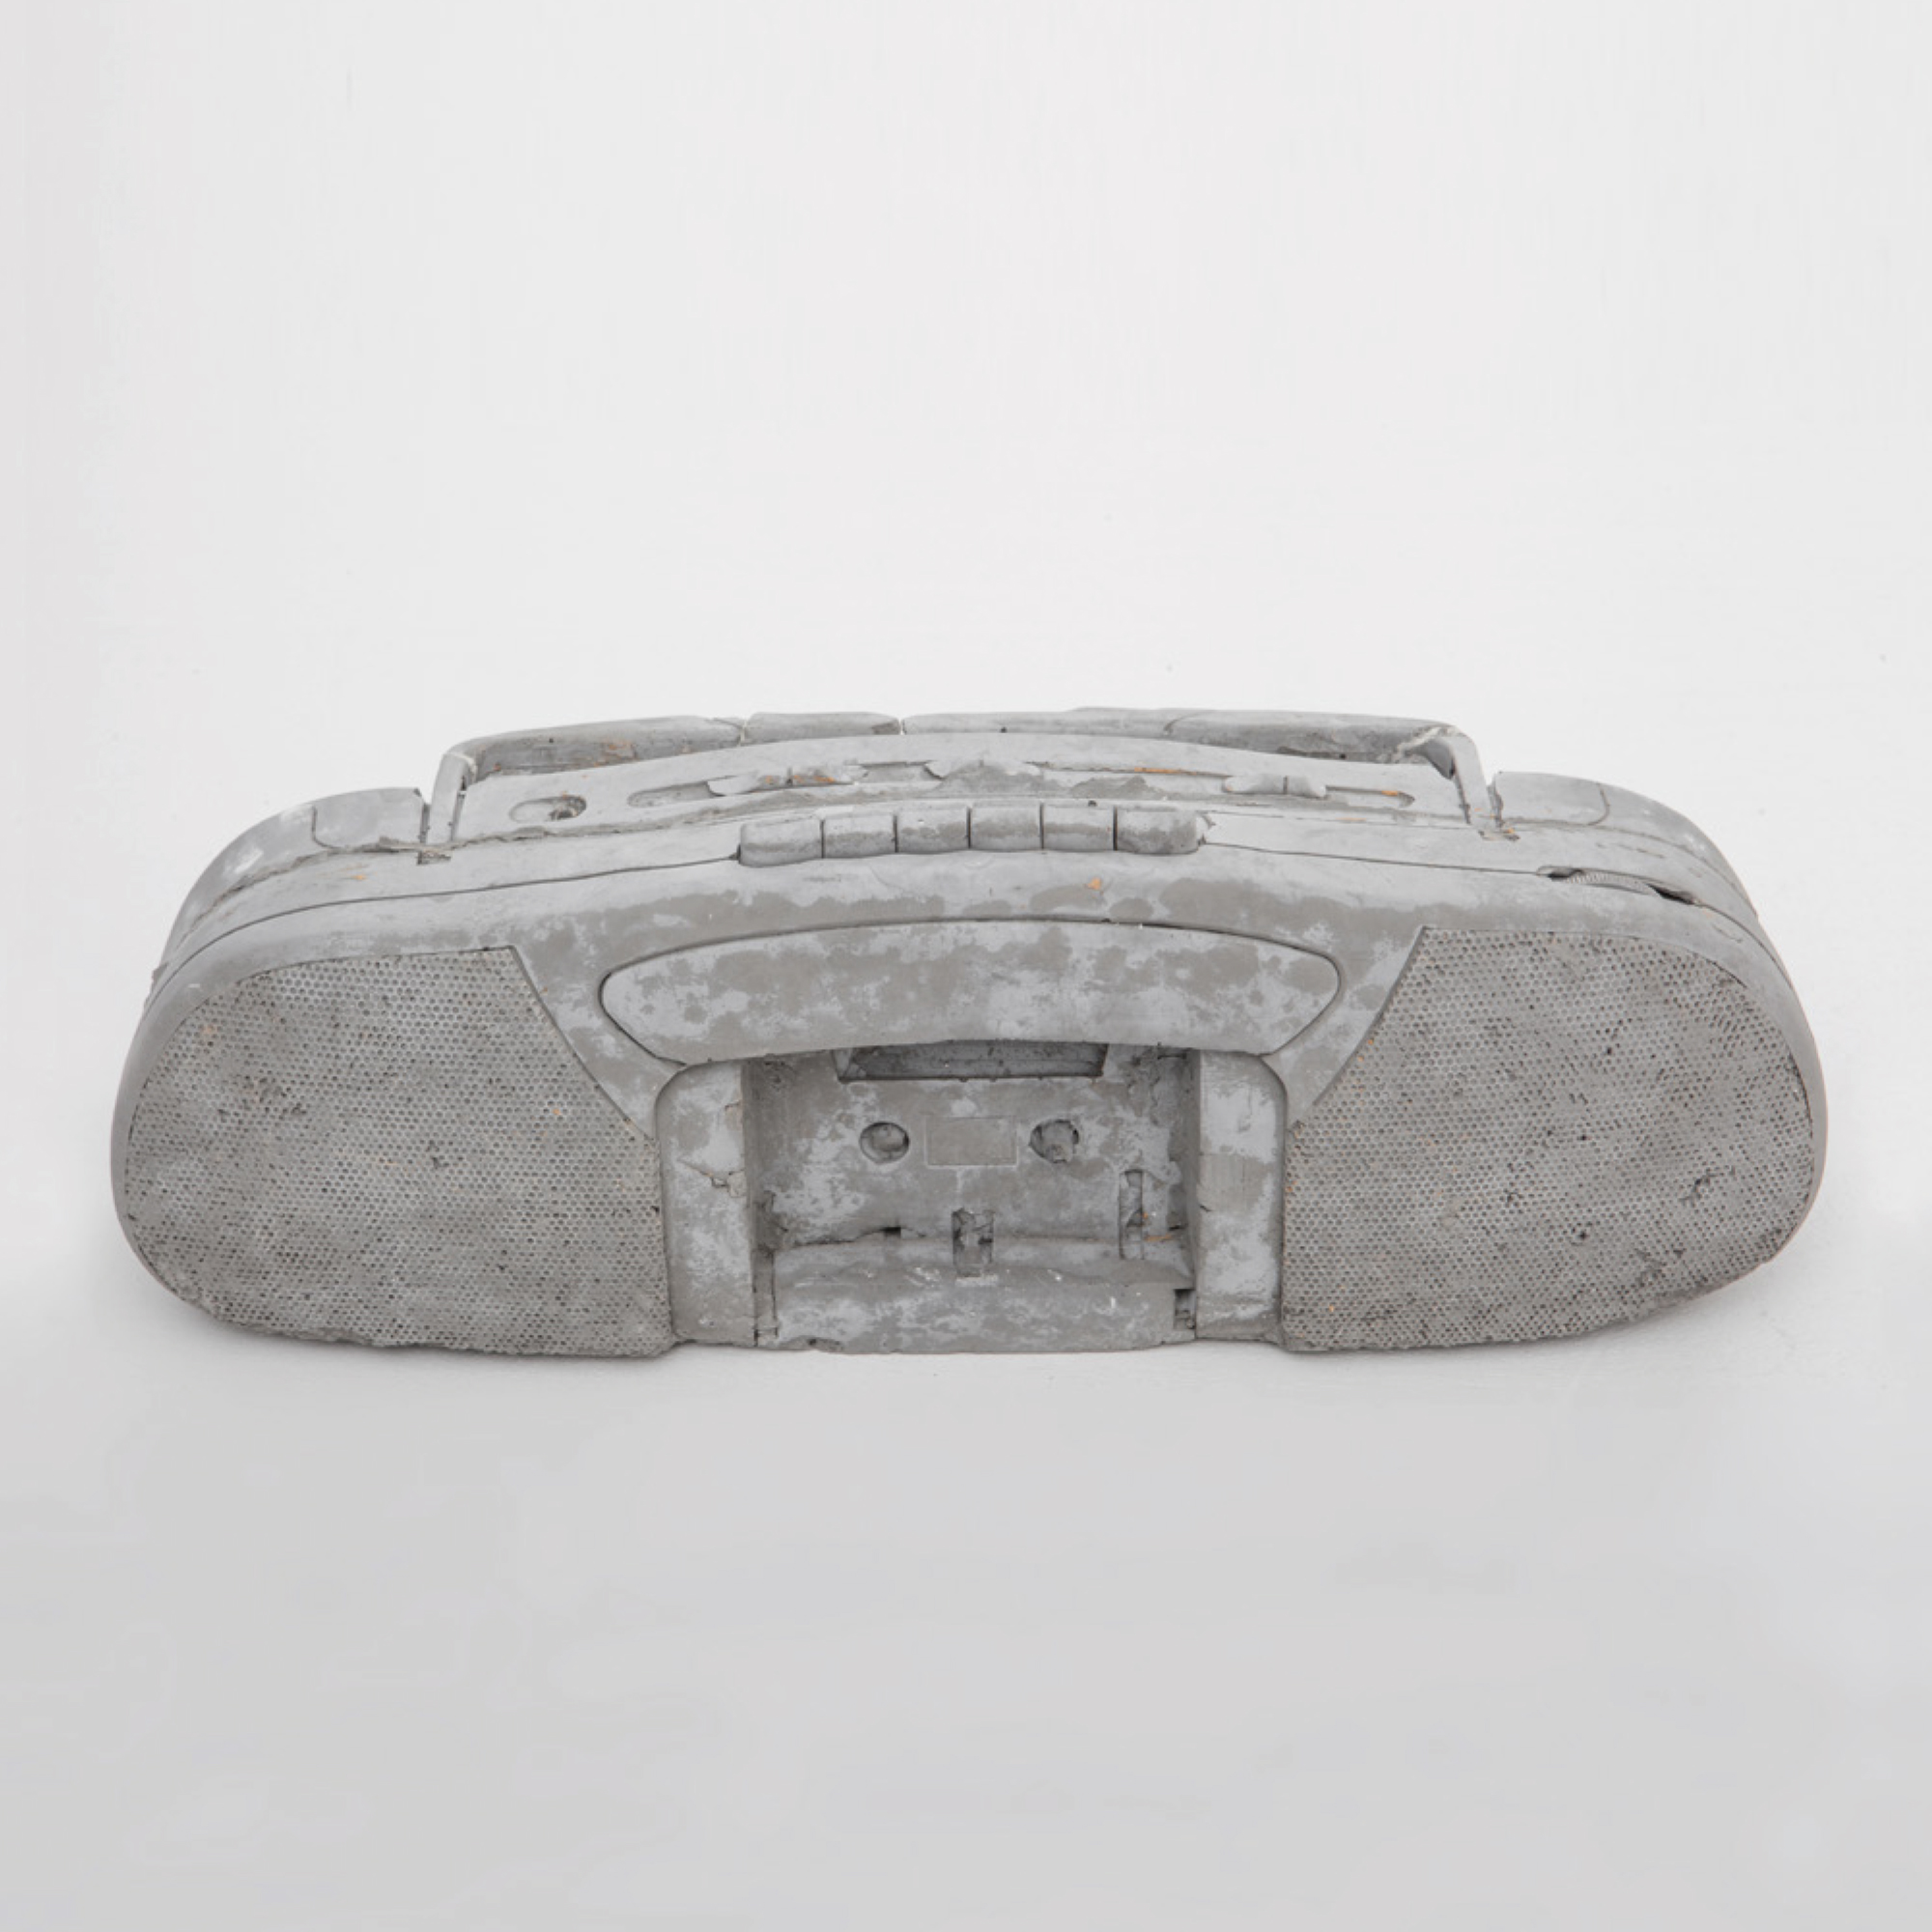 RADIO-CASSETTE, 2016 Edition 1/3 + 2 EA
Série « Musée des Ouvriers » Sculpture béton
14 x 42 x 14 cm